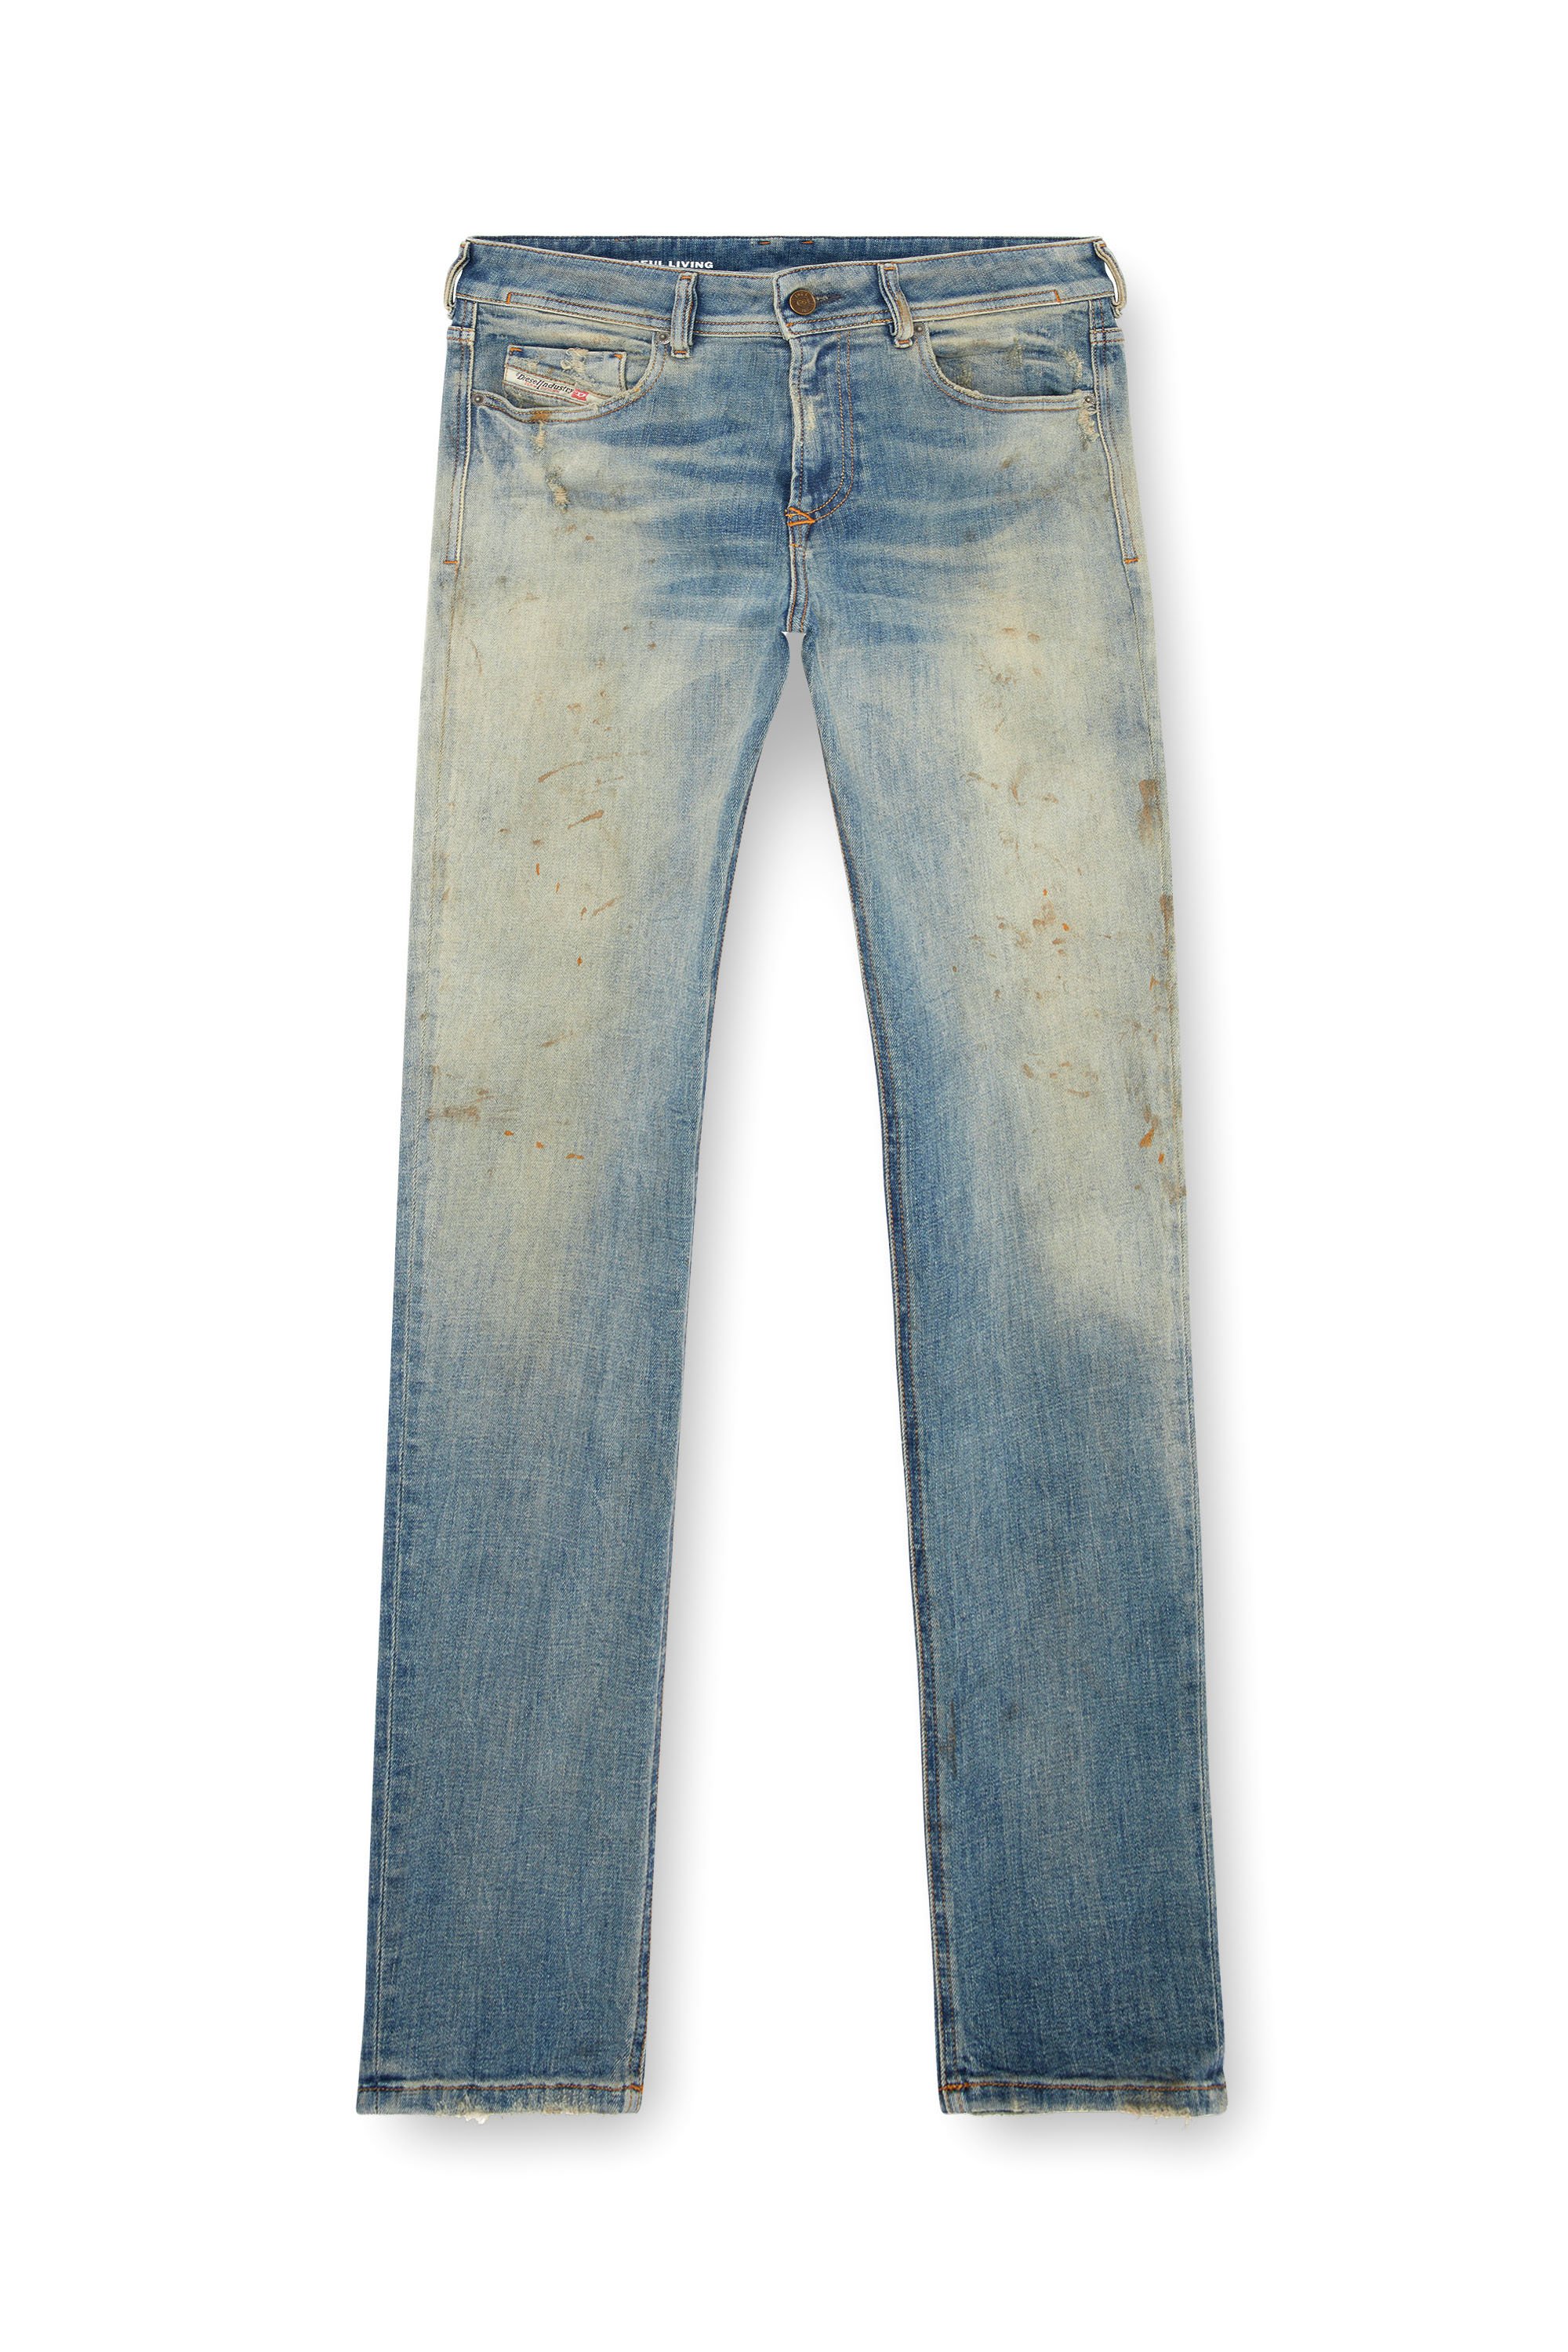 Diesel - Man Skinny Jeans 1979 Sleenker 09J25, Medium blue - Image 3